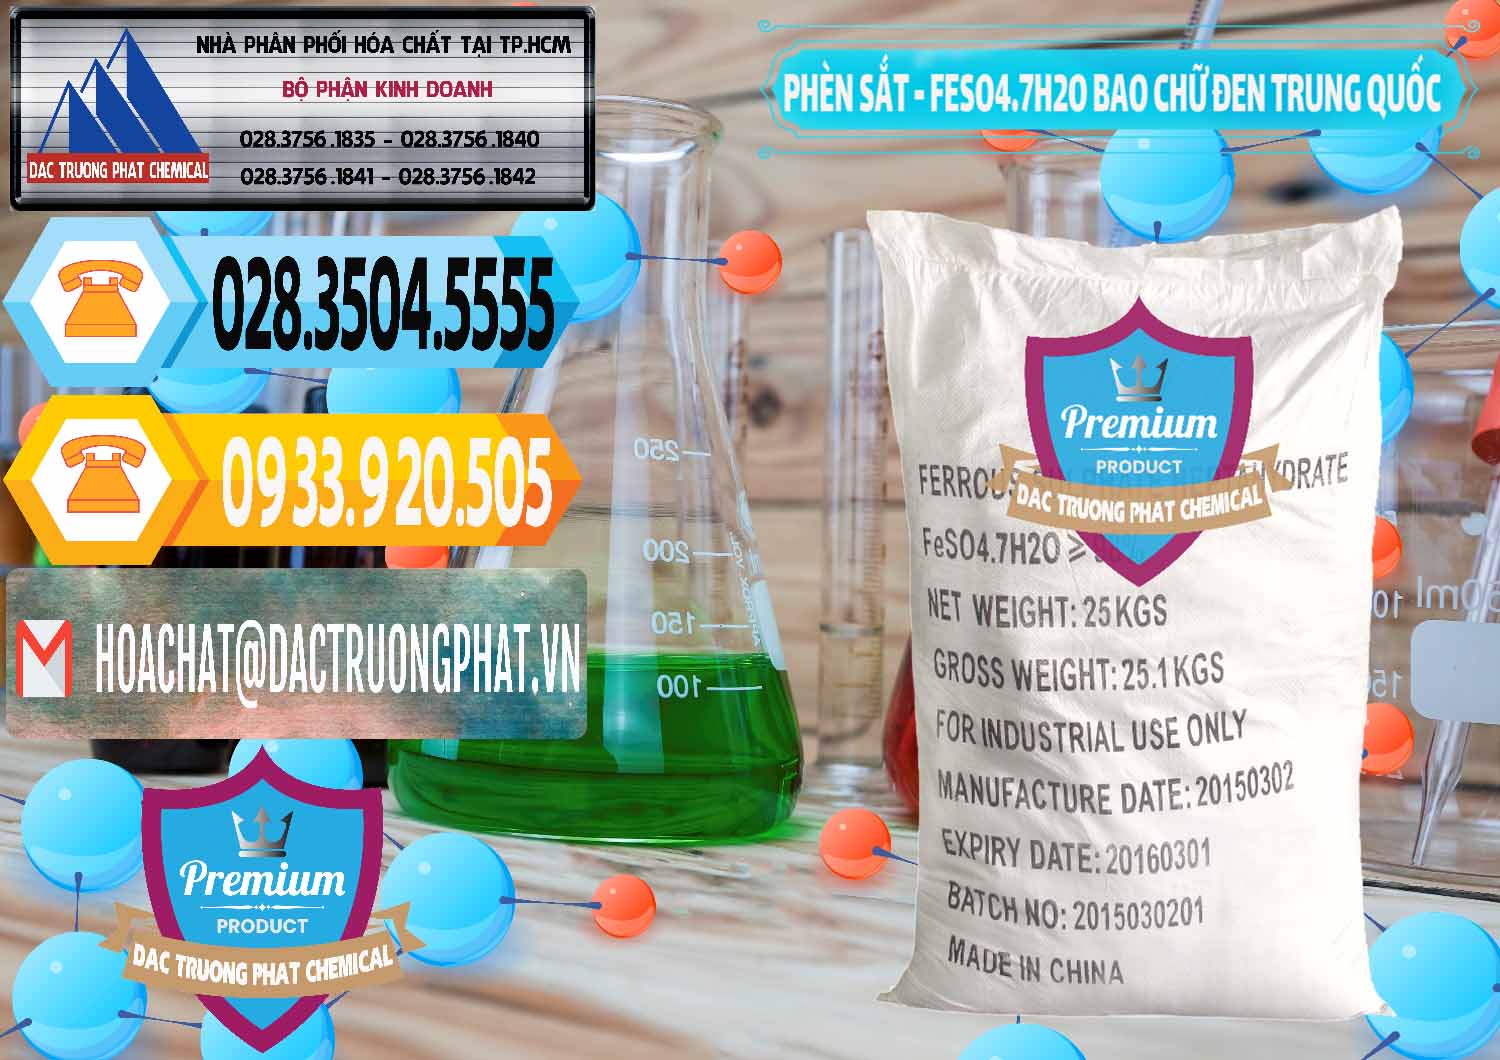 Cty nhập khẩu - bán Phèn Sắt - FeSO4.7H2O Bao Chữ Đen Trung Quốc China - 0234 - Đơn vị cung cấp ( phân phối ) hóa chất tại TP.HCM - hoachattayrua.net